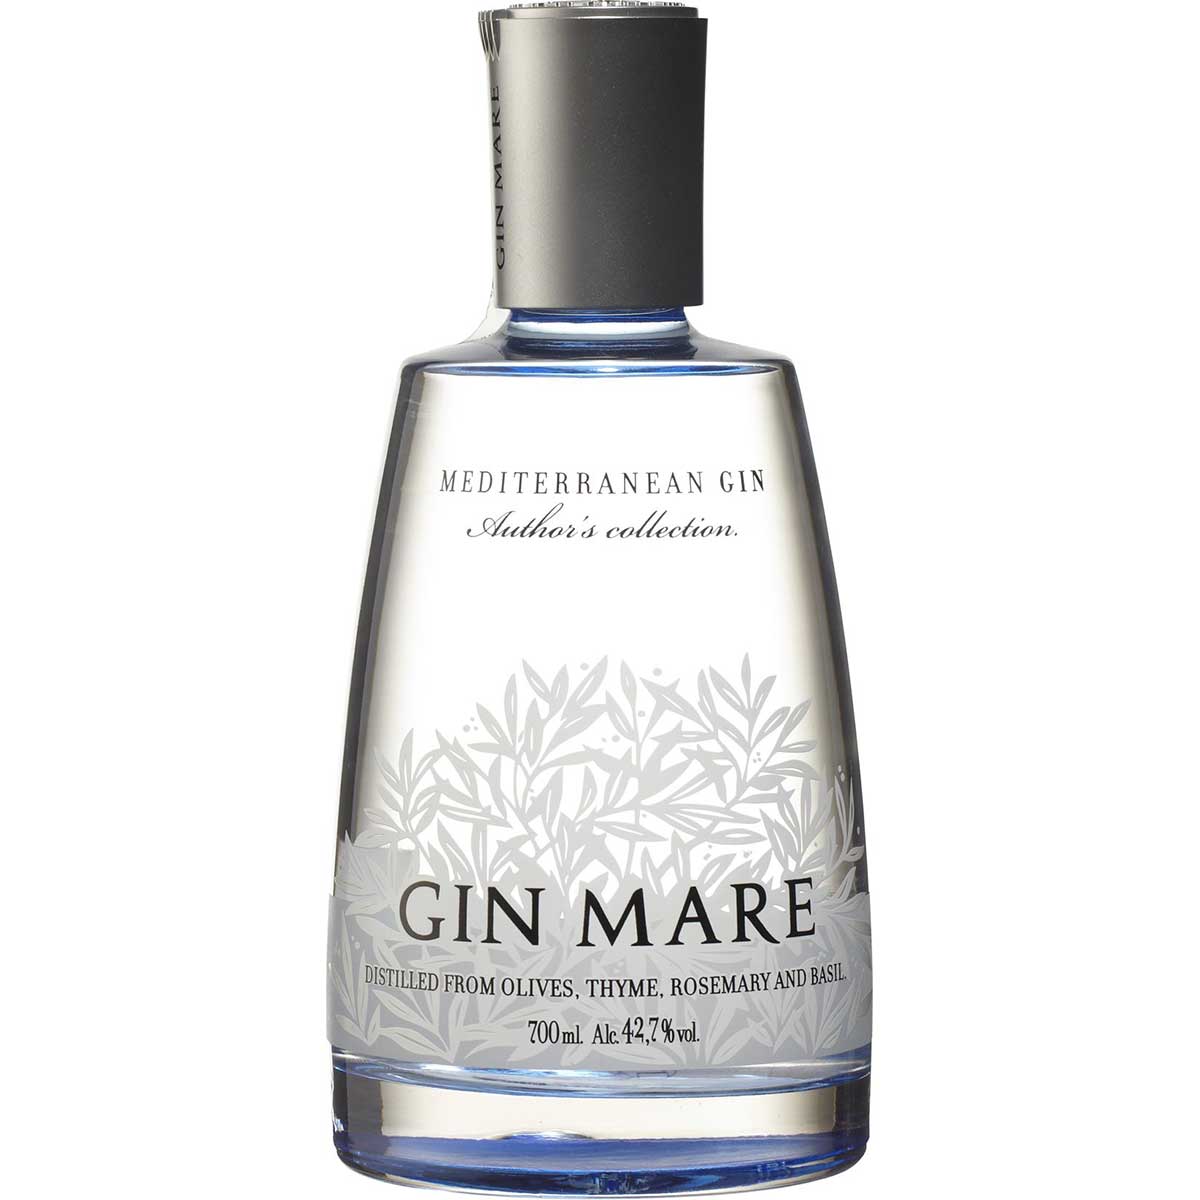 Buy Gin Mare Mediterranean Gin